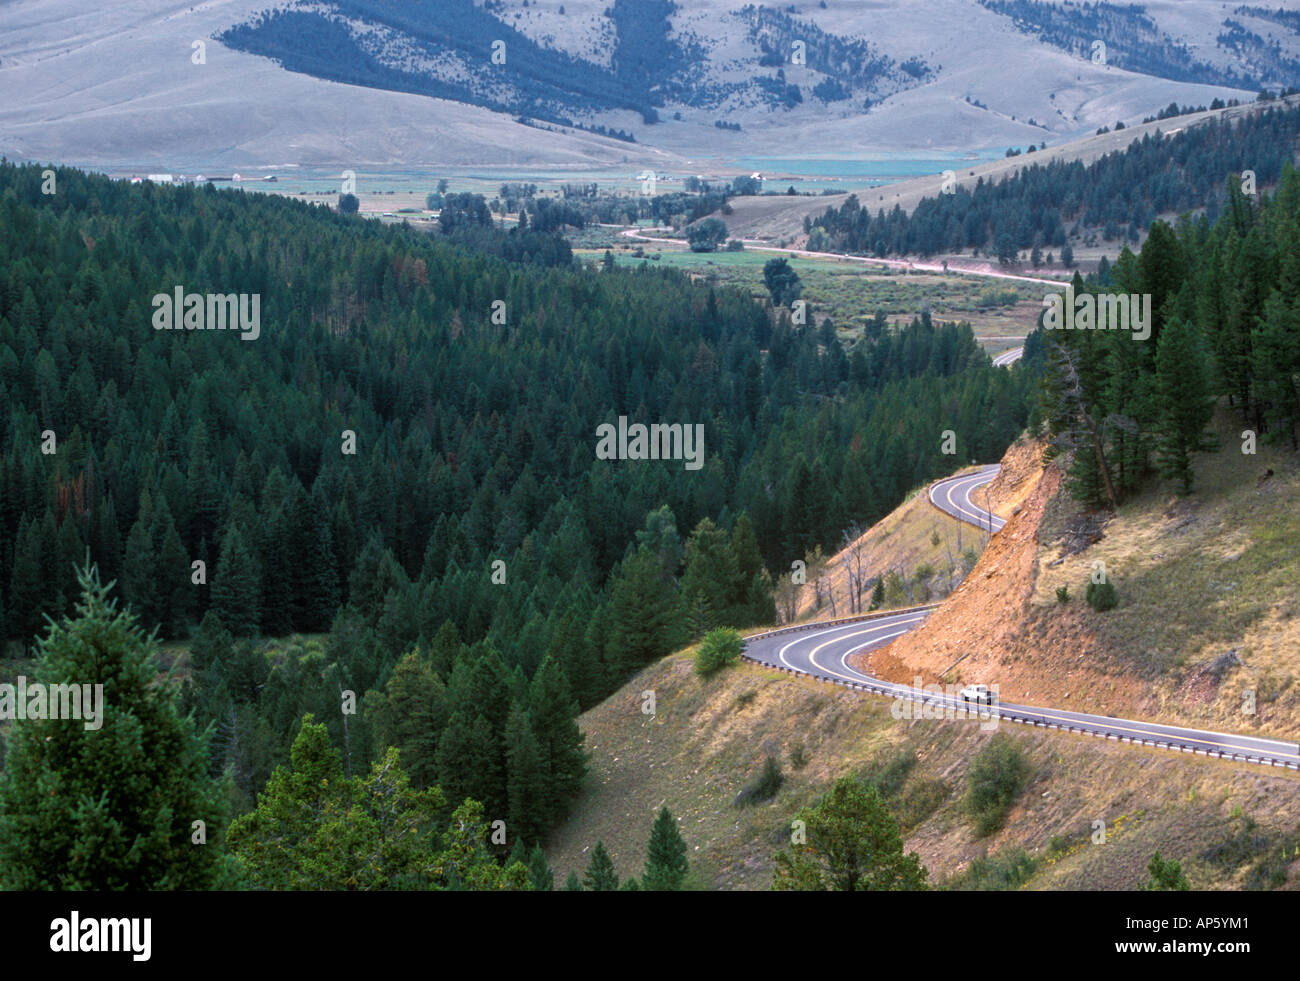 Pintler Scenic Highway 1 in Montana Stock Photo